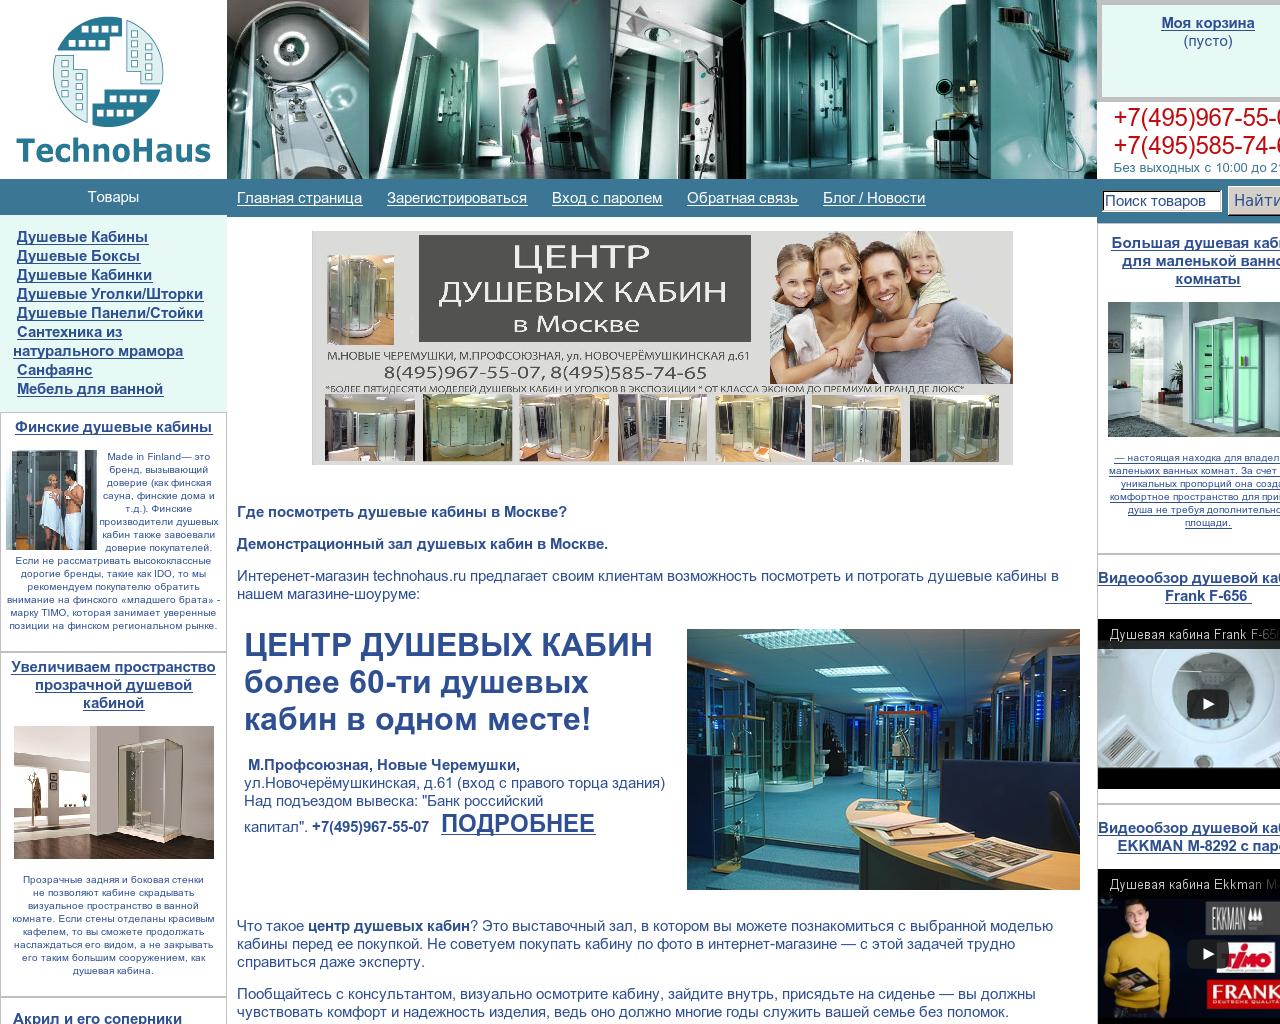 Изображение сайта technohaus.ru в разрешении 1280x1024